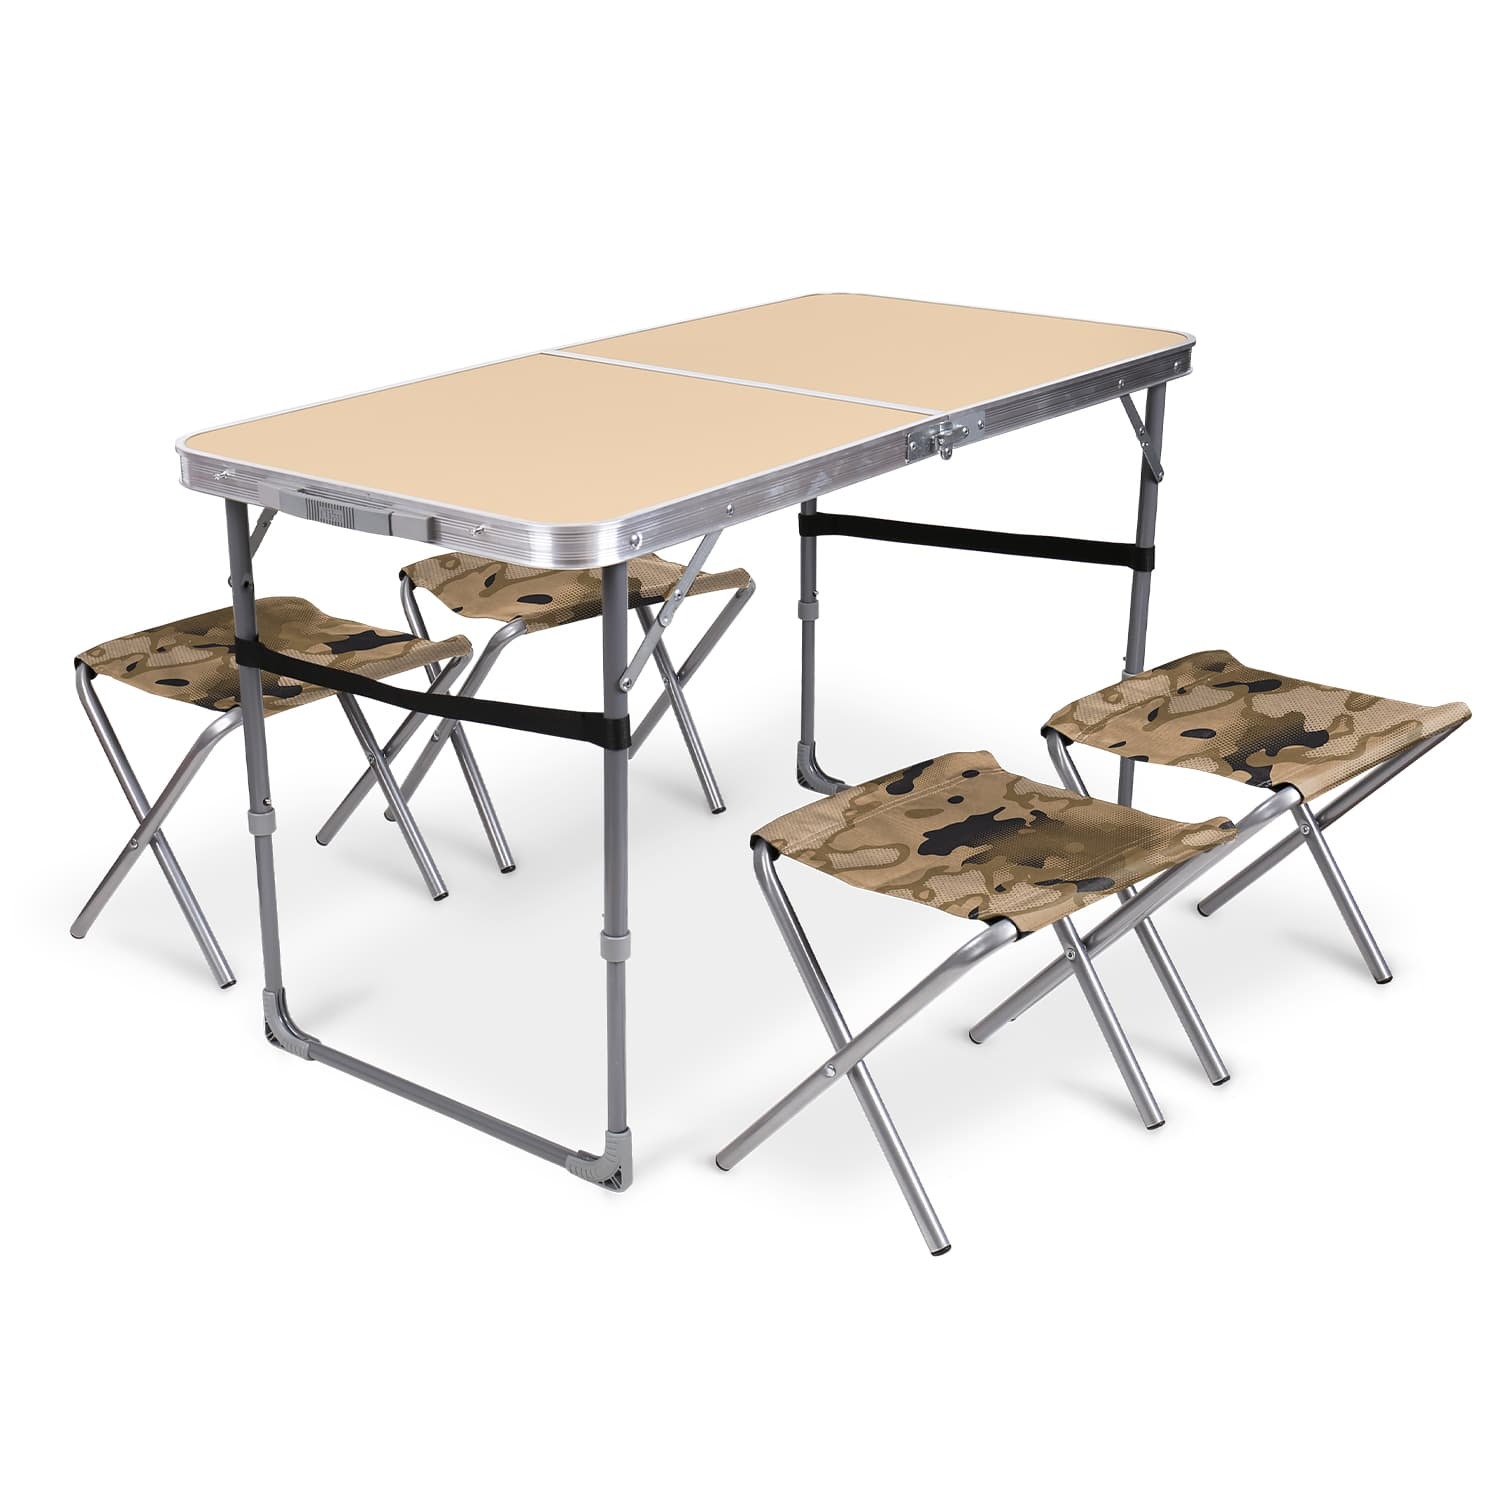 Комплект складной мебели Ника песочный стол с табуретами 5 предметов складной тканевый табурет ццц стулья сайт